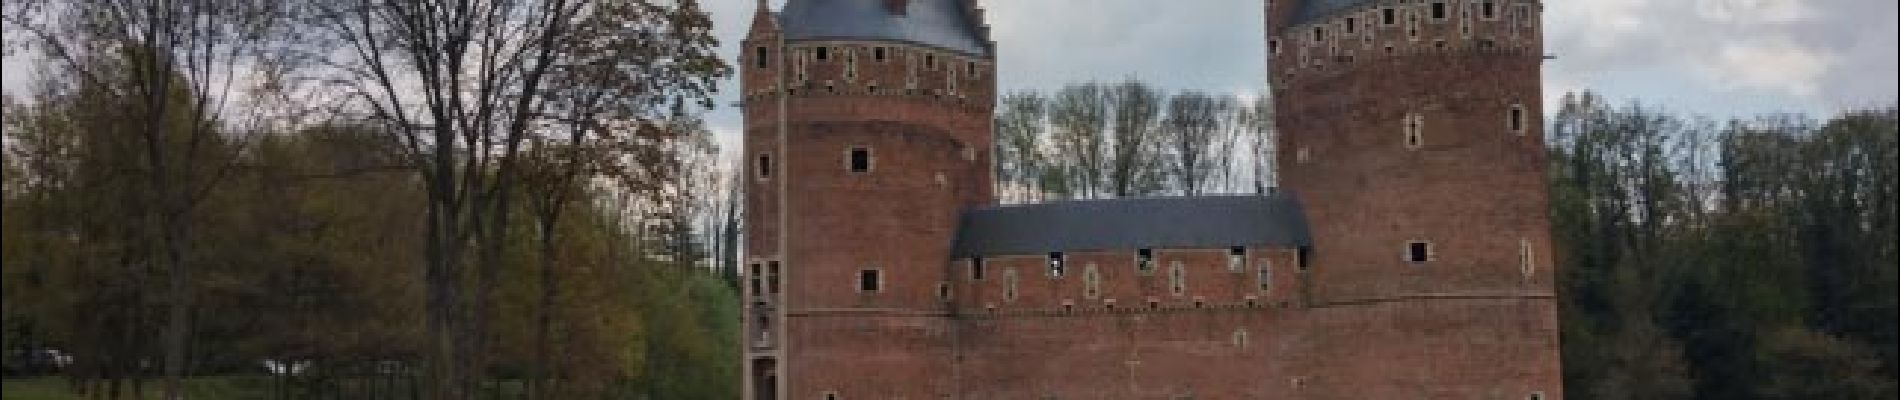 Point d'intérêt Beersel - Vue du château - Photo